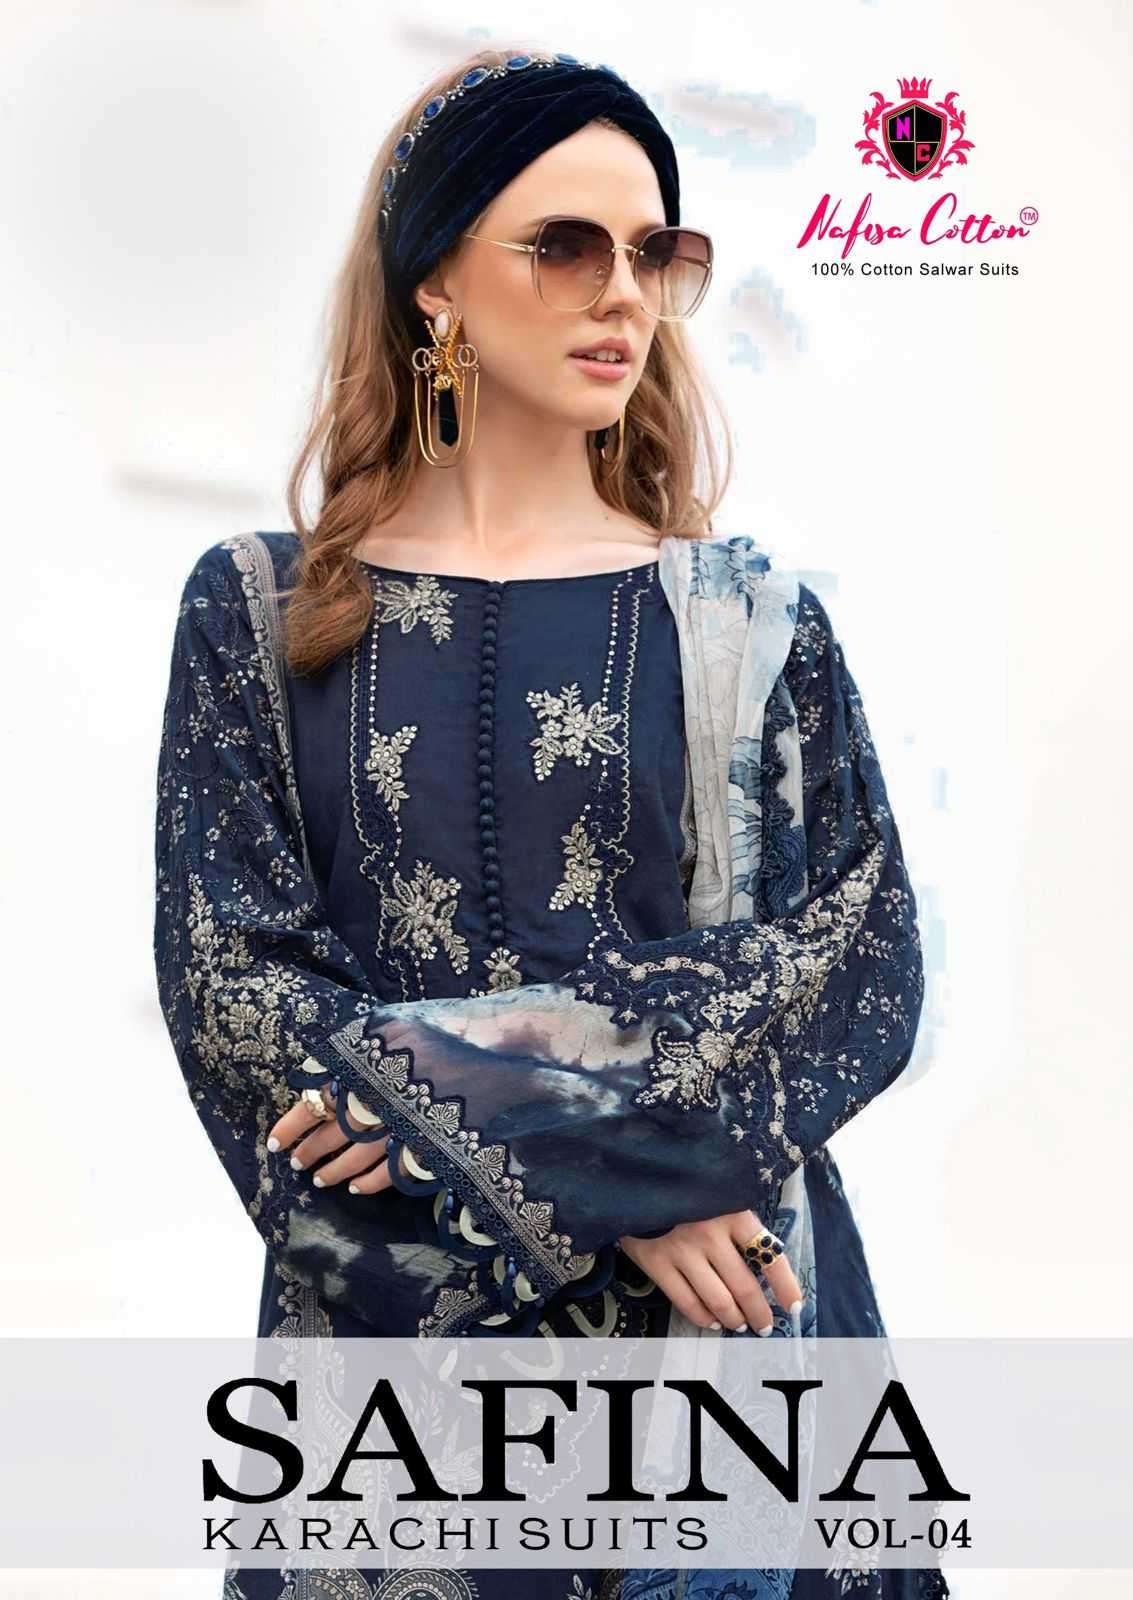 nafisa cotton safina karachi suits vol 4 series 4001-4006 pure soft cotton suit 